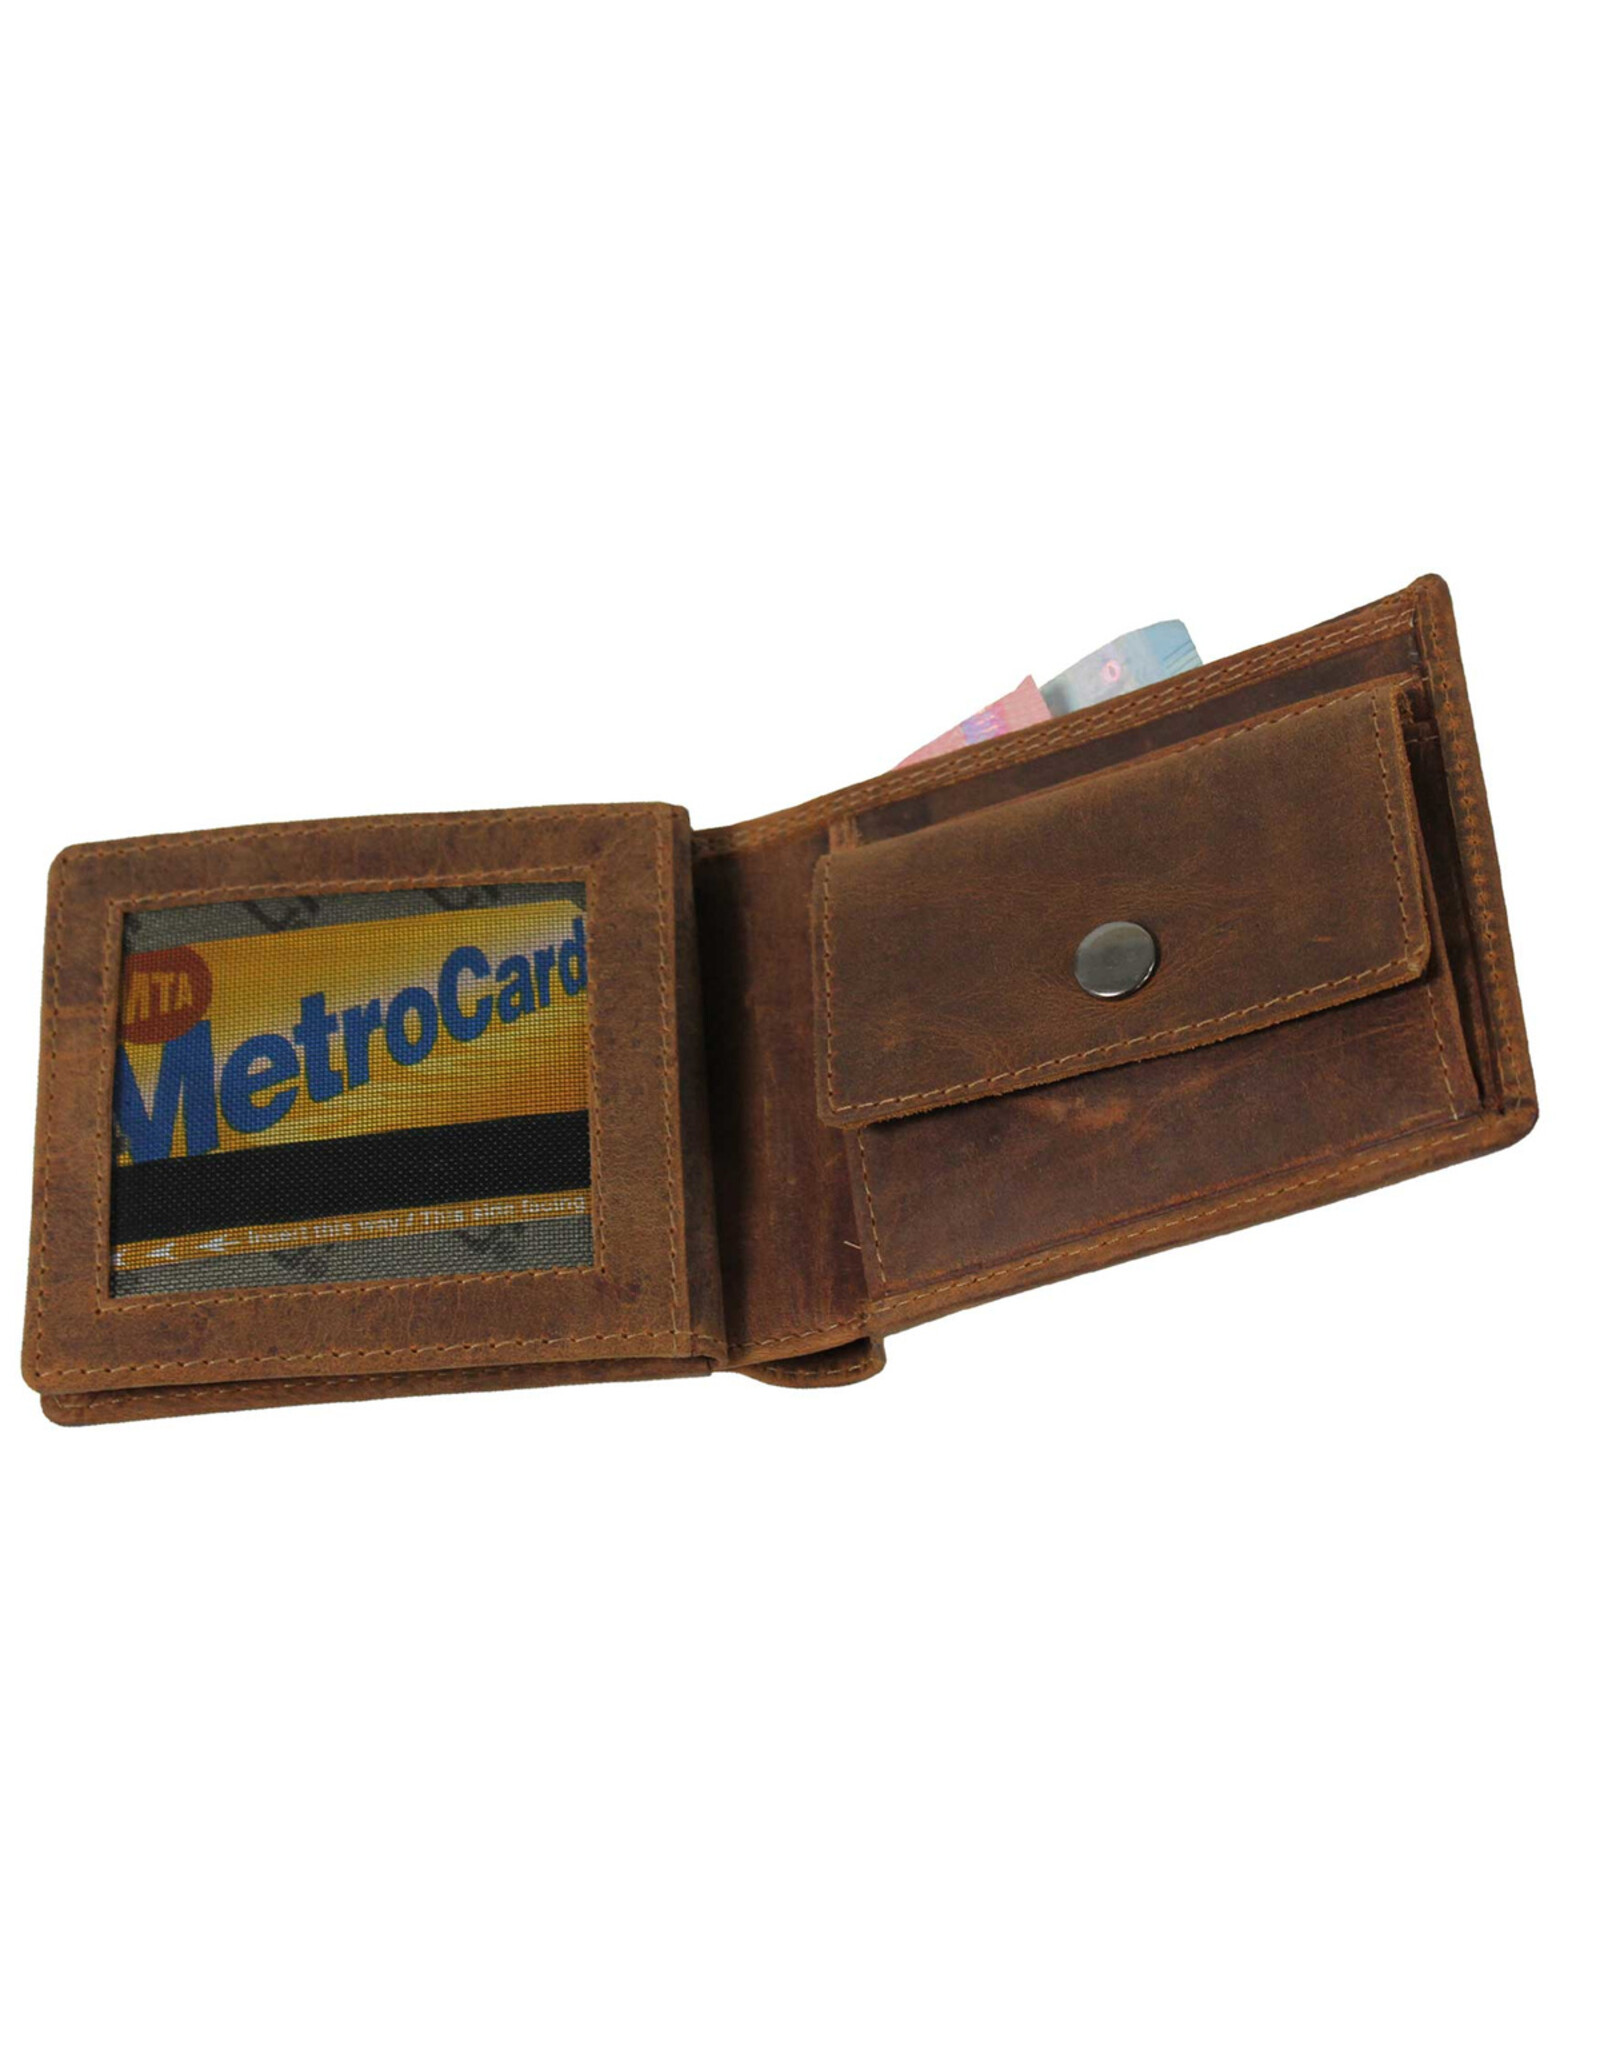 LandLeder Leather Wallets - LandLeder Billfold Wallet BULL & SNAKE with RFID